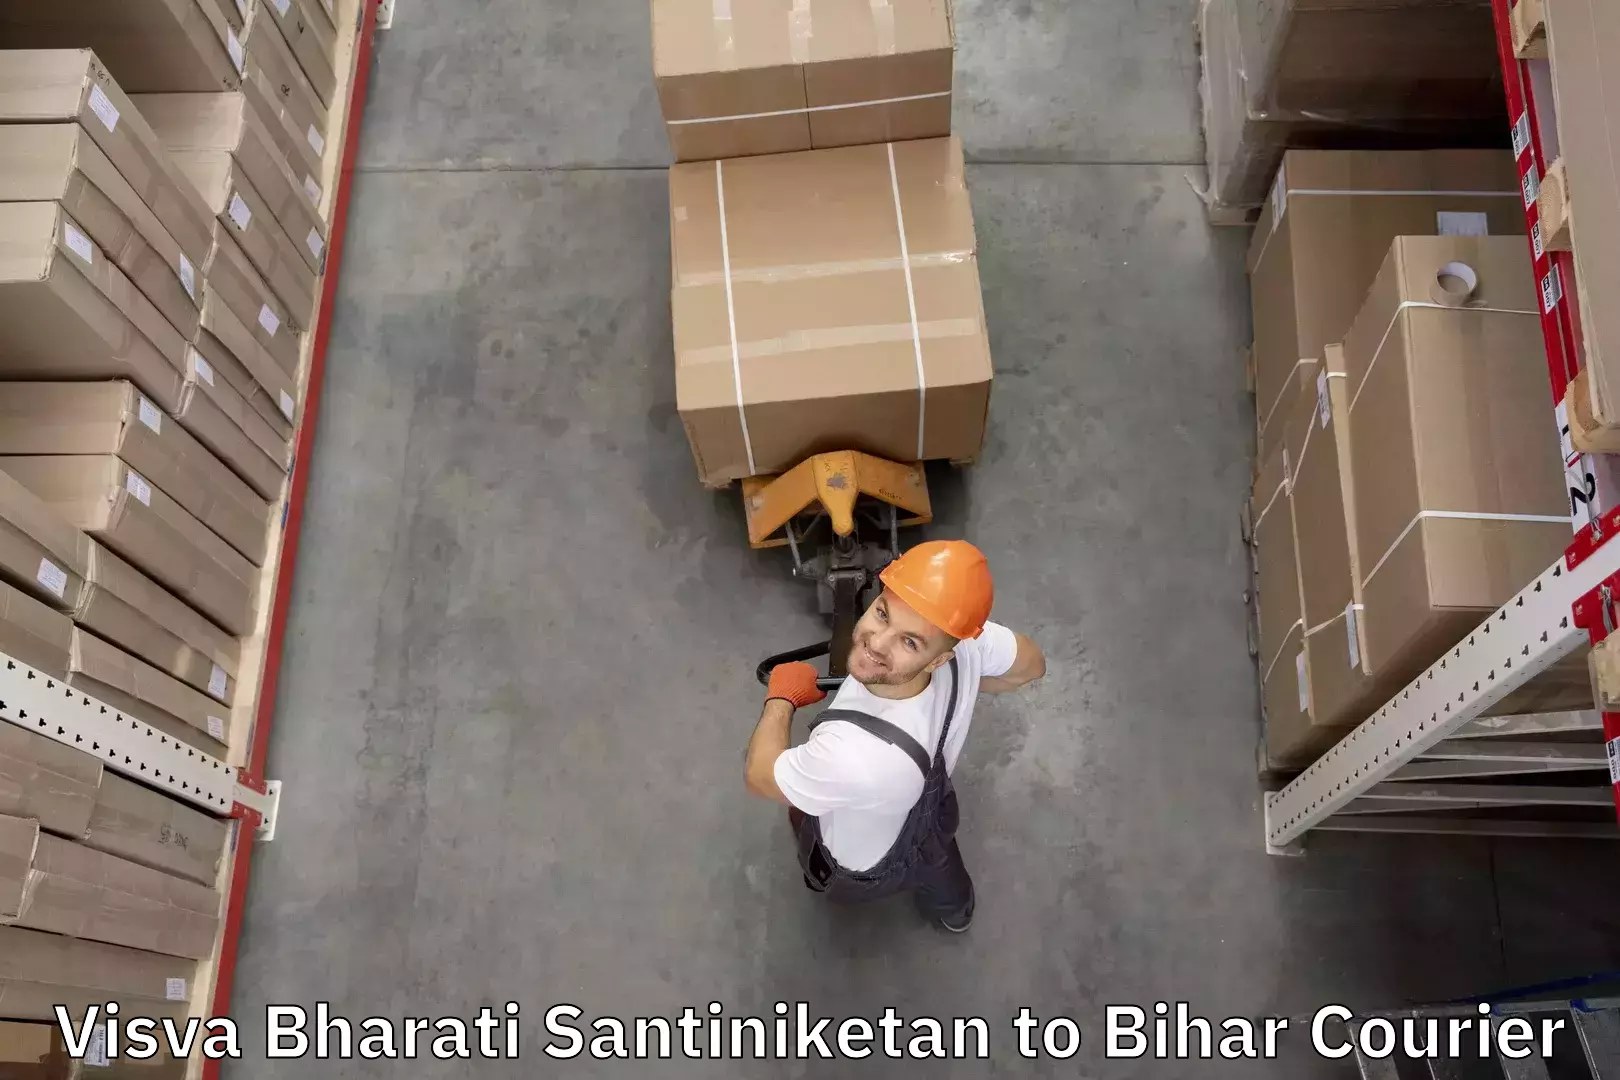 Digital baggage courier Visva Bharati Santiniketan to Narkatiaganj